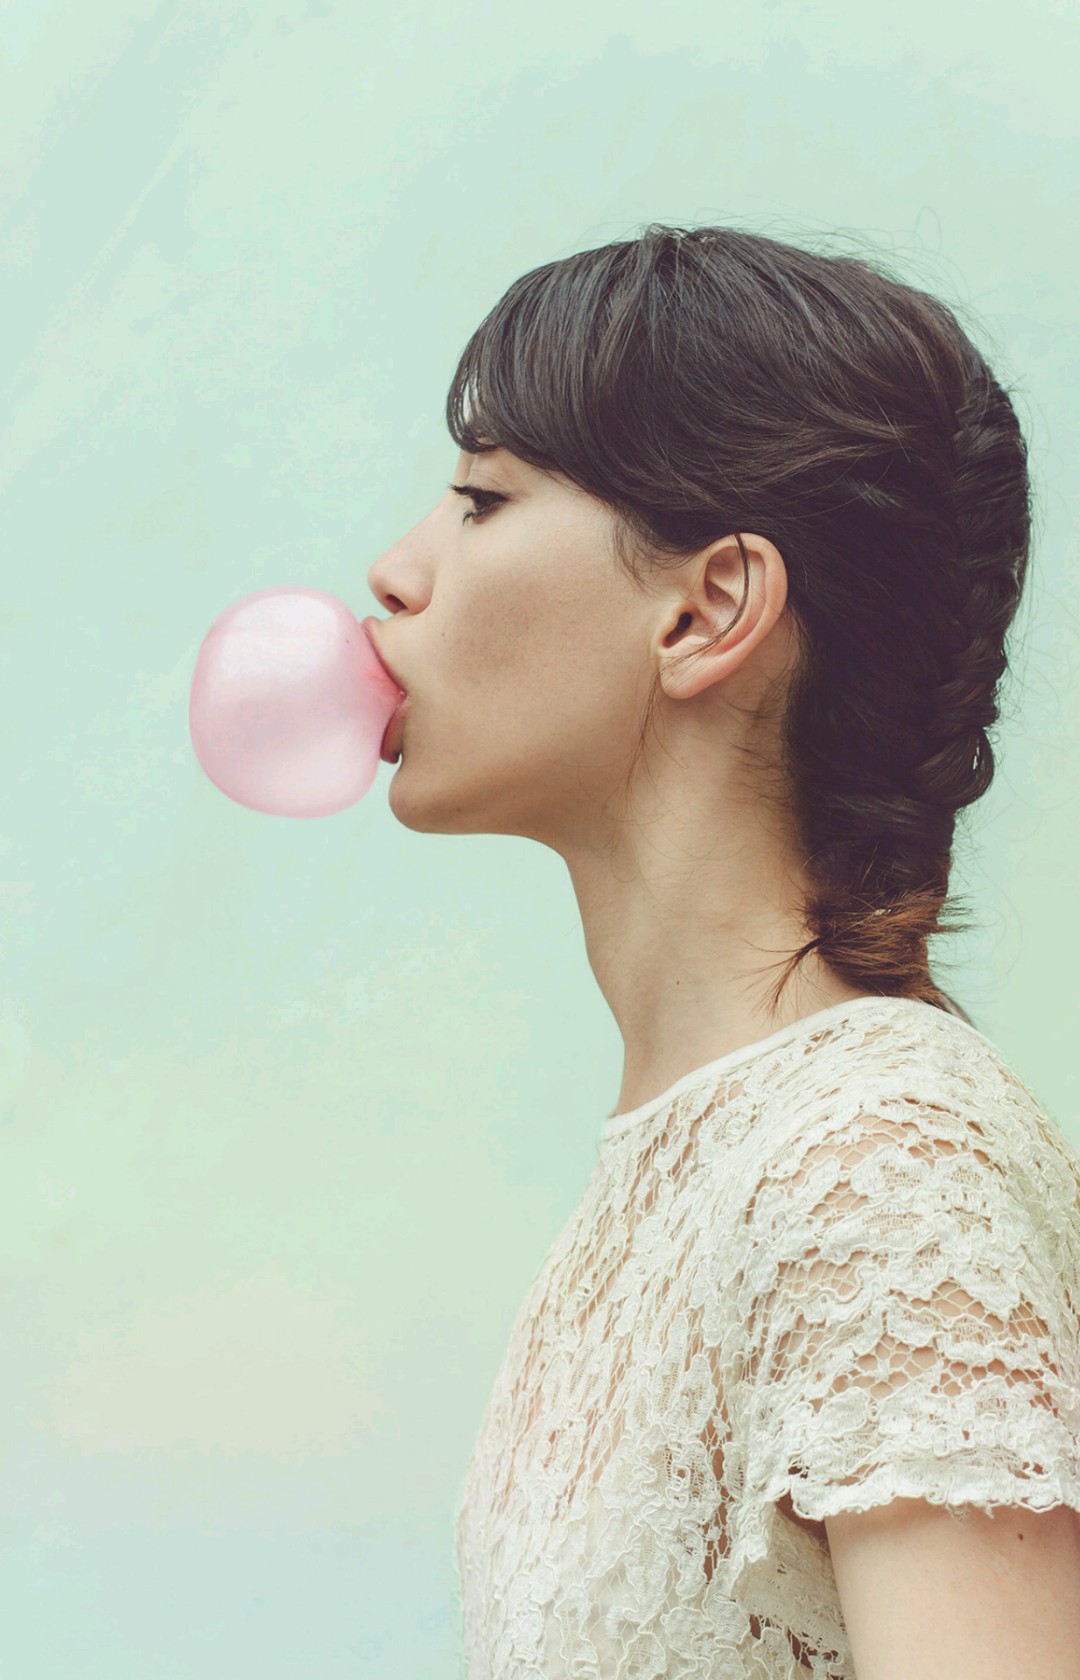 People 1080x1680 bubble gum women face profile model simple background